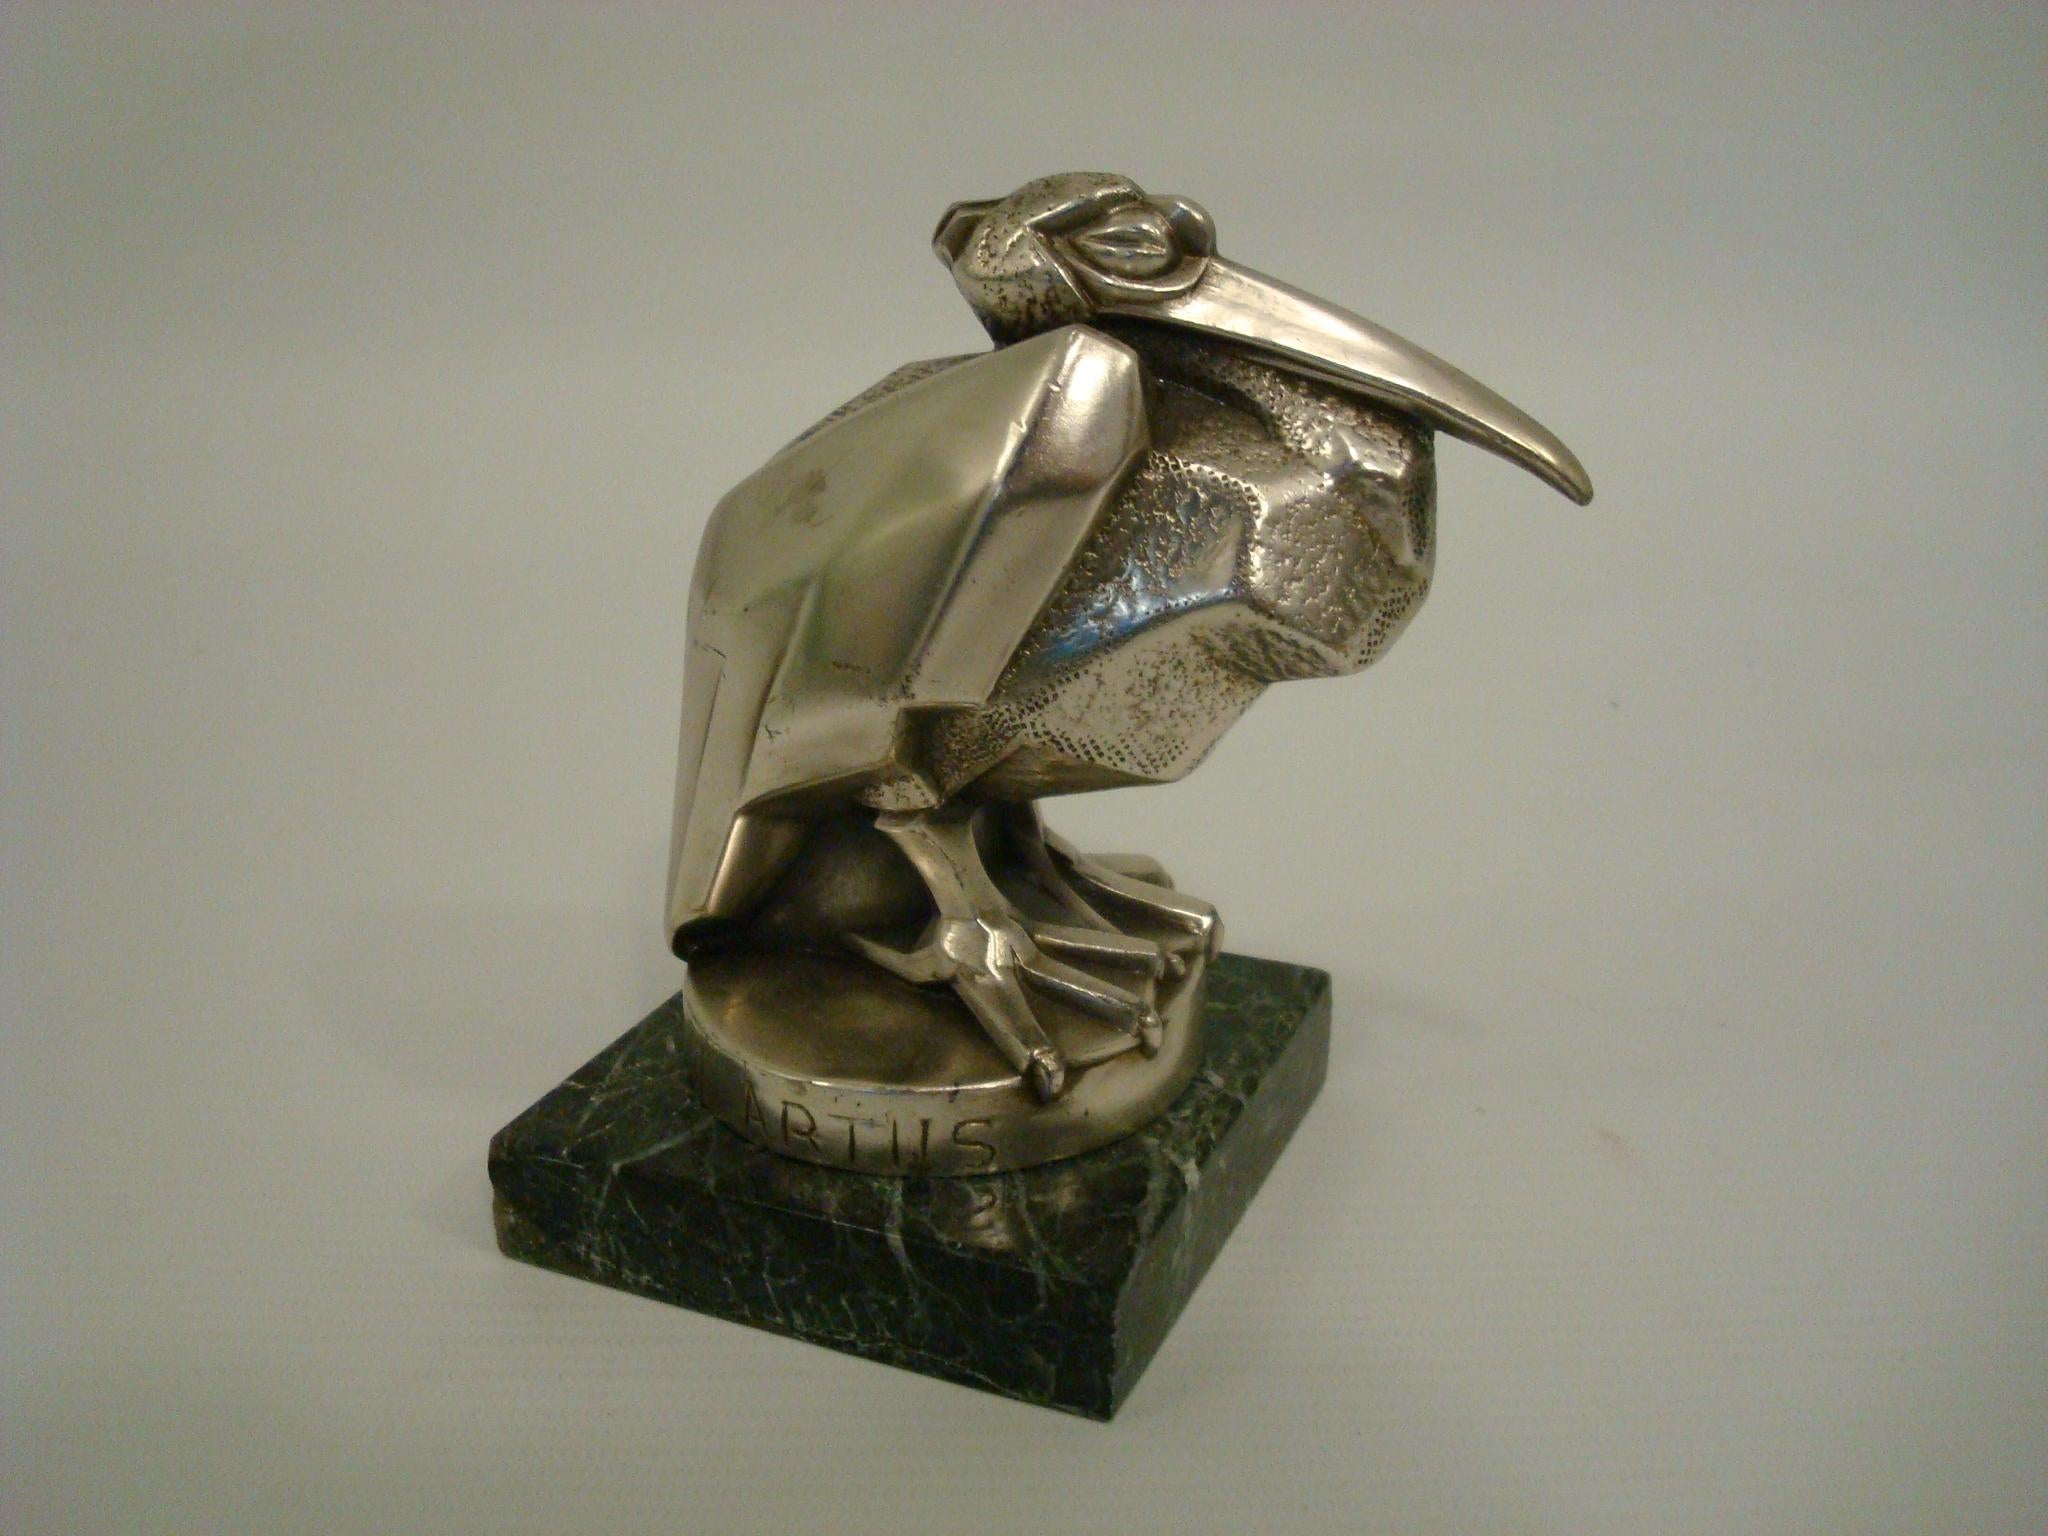 Art Déco Max Le Verrier / Artus Bird Hood Ornament / Paperweight - France.
Rarement trouvé, le célèbre Pélican d'Artus, datant de 1925. (Pseudonyme de Max Le Verrier).
Véritable sculpture d'époque. Cadeau idéal pour tout fan de mascottes de